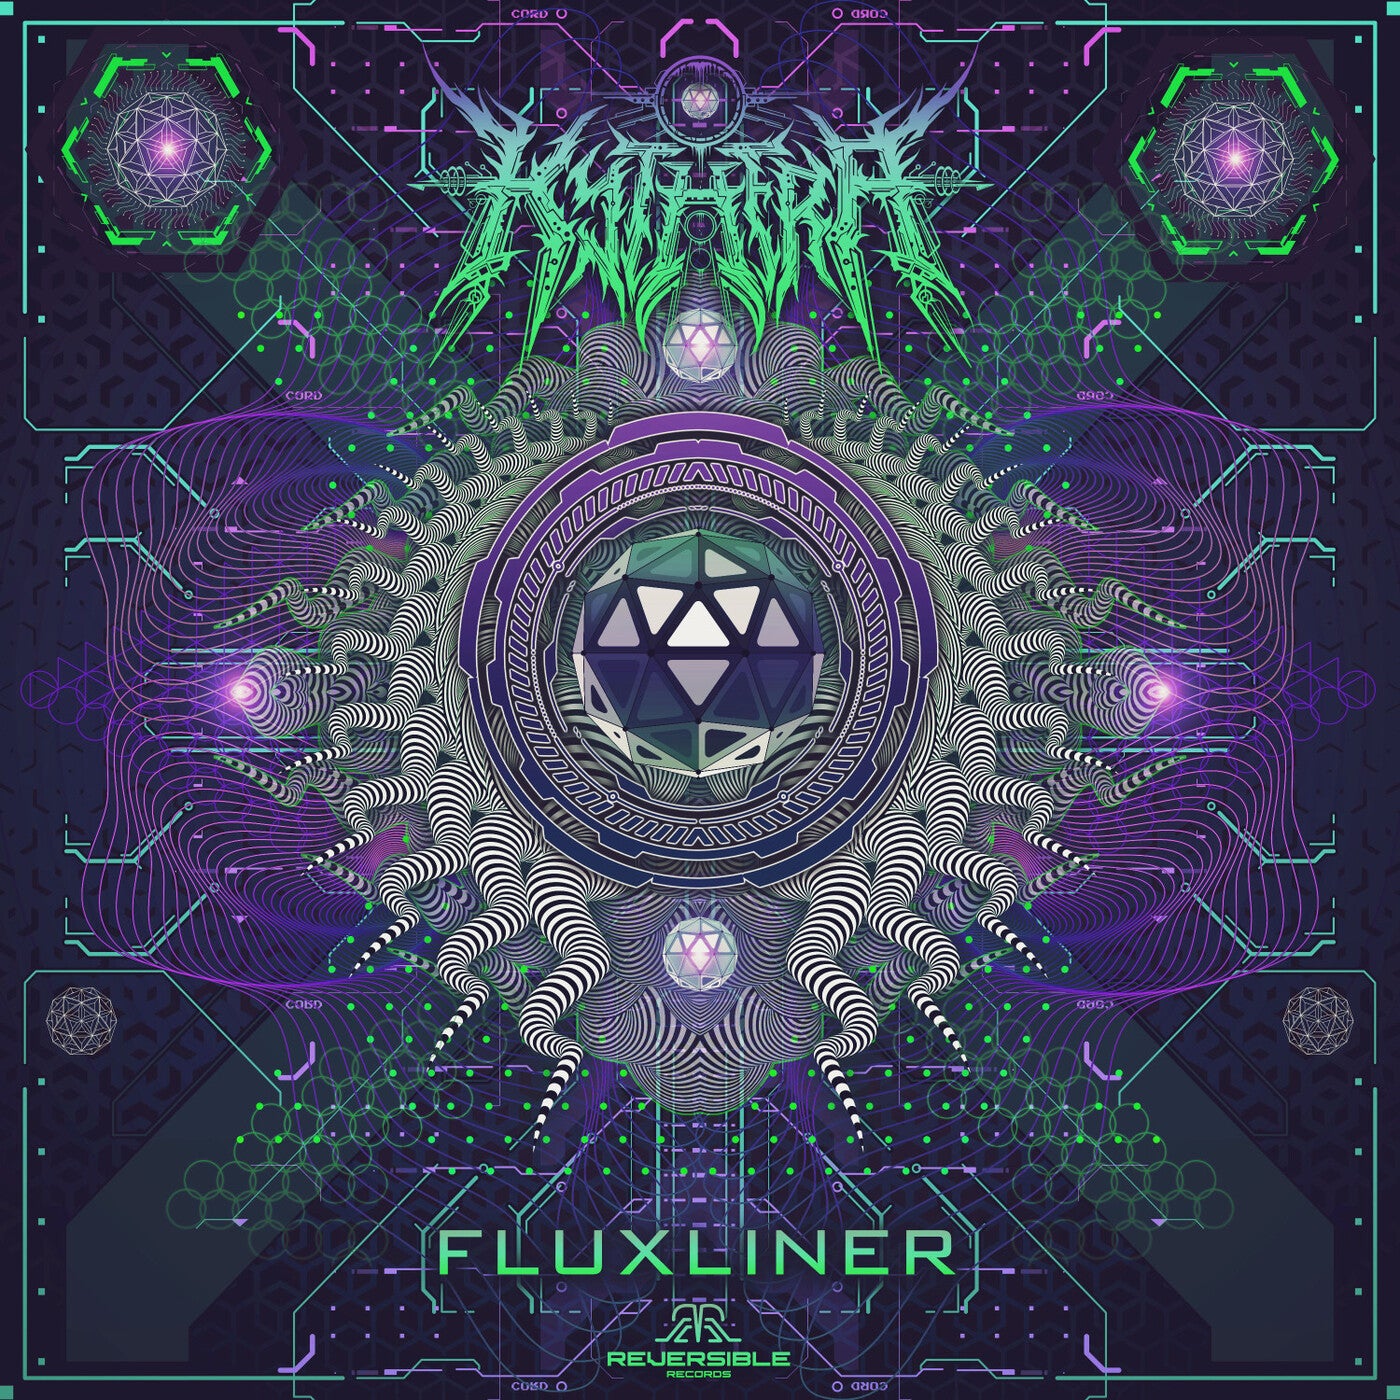 Fluxliner